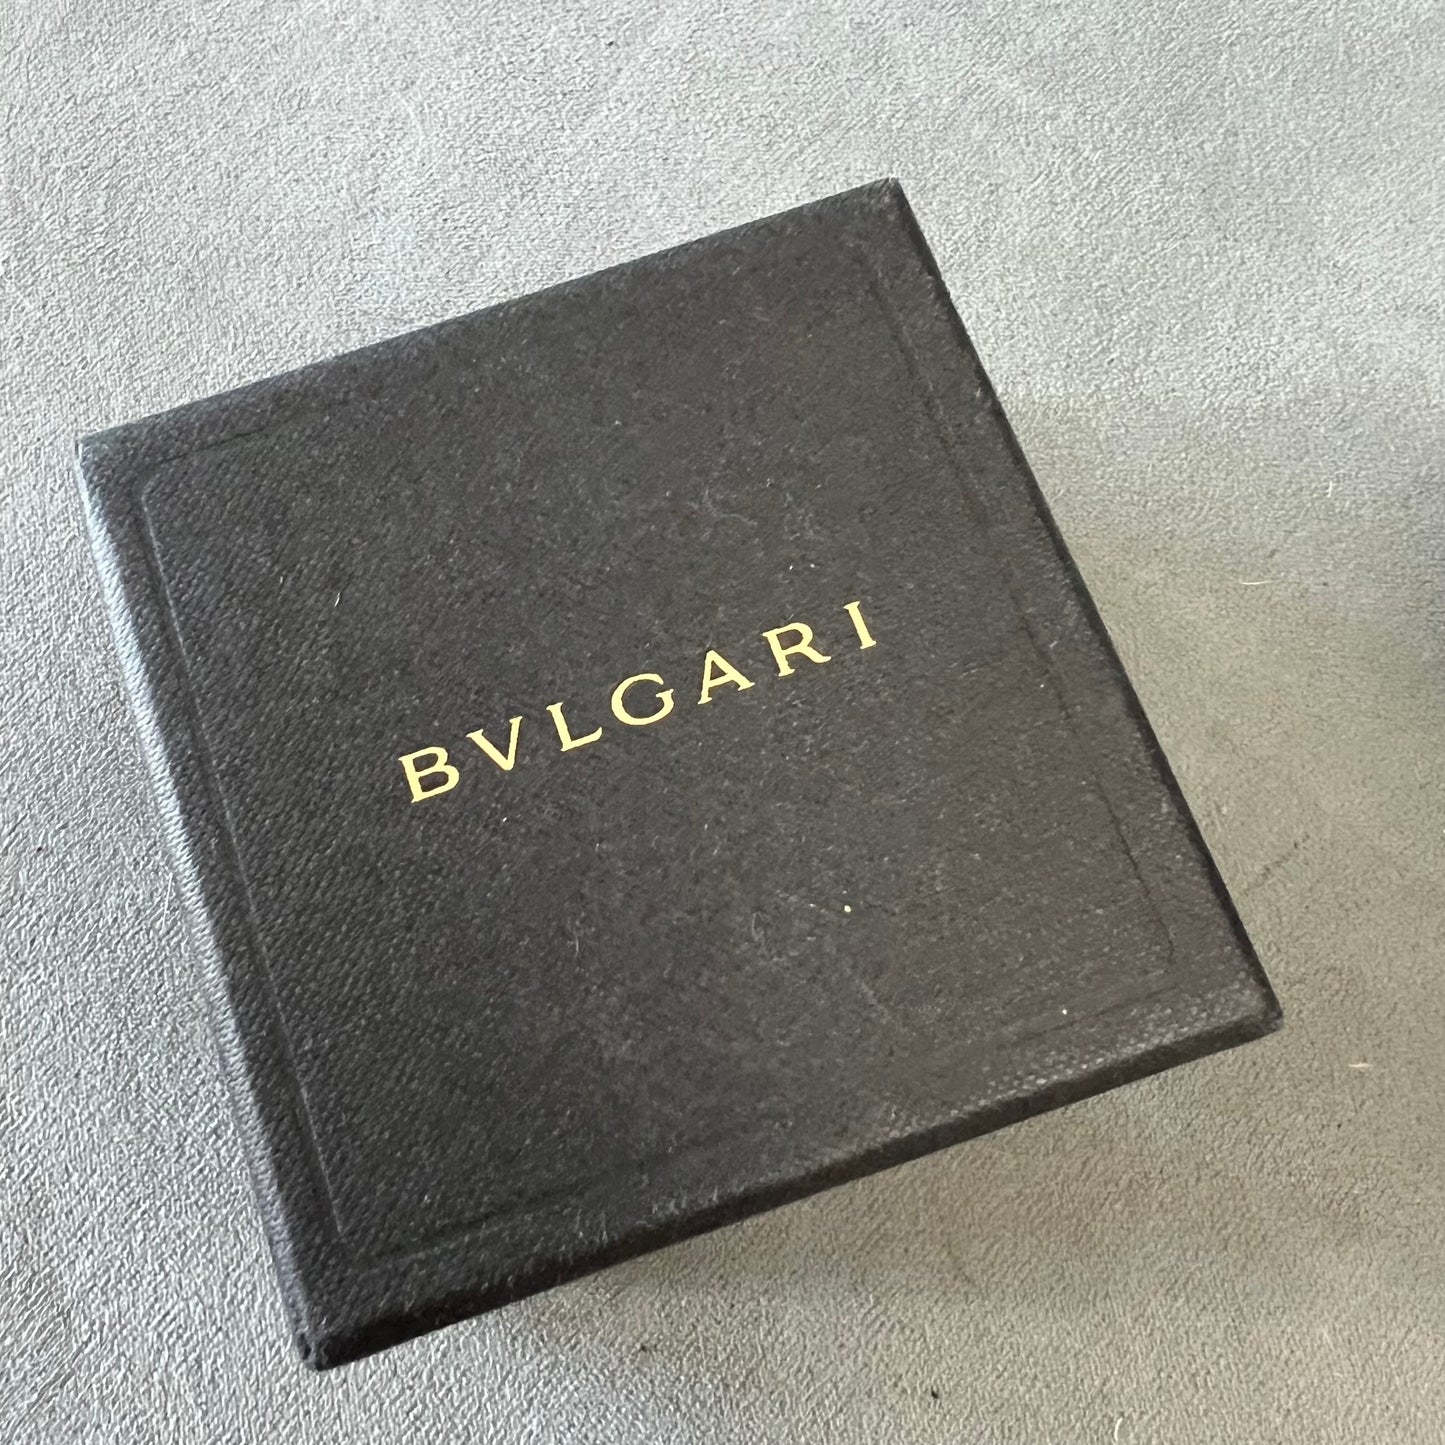 BULGARI Ring Box 3.25x3.25x2 inches